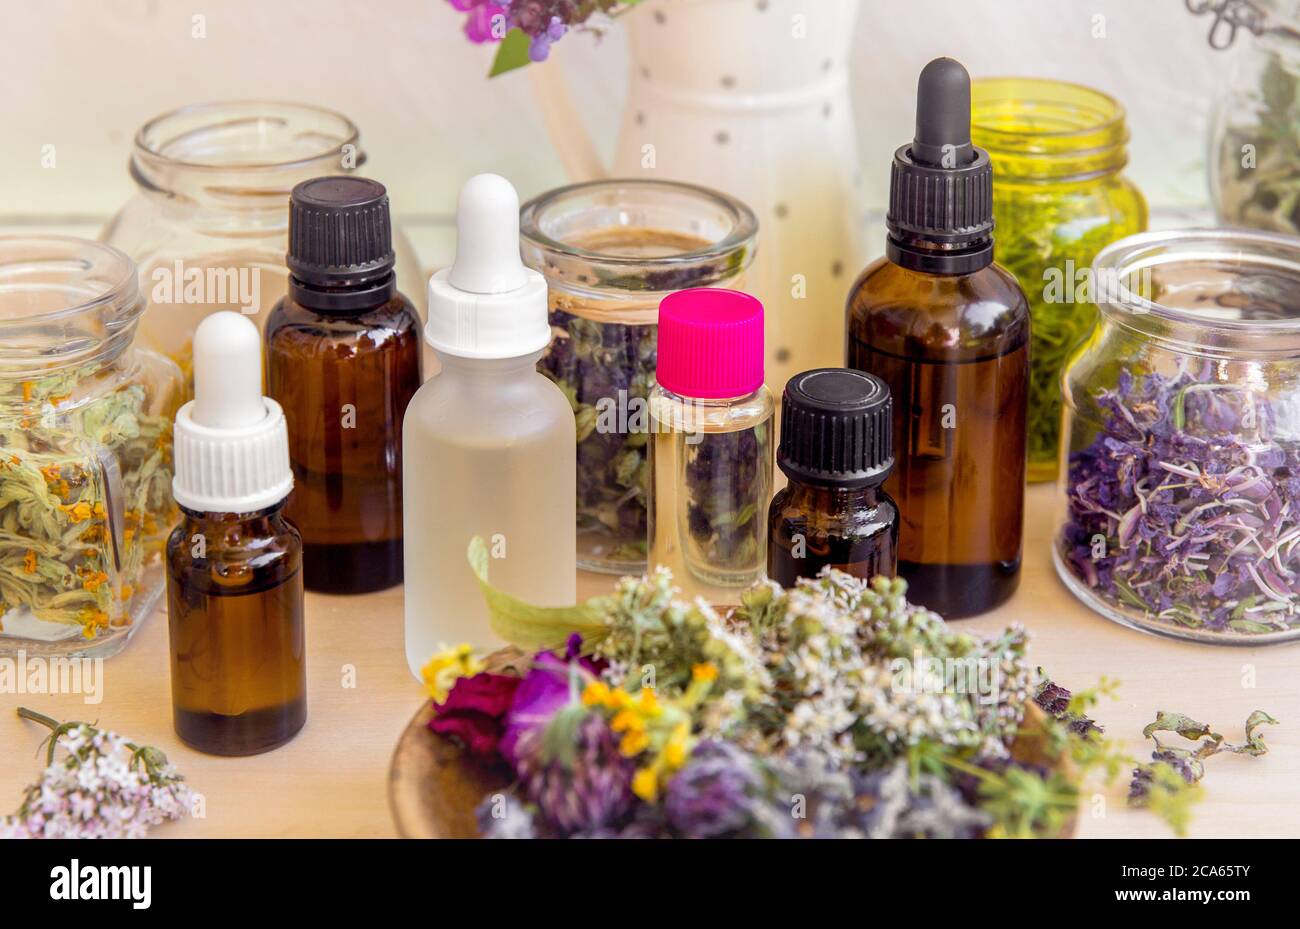 Viele verschiedene aromatische Ölflaschen auf dem Tisch, dekoriert mit wilden getrockneten Blumen und Pflanzen. Lifestyle-Komposition. Stockfoto